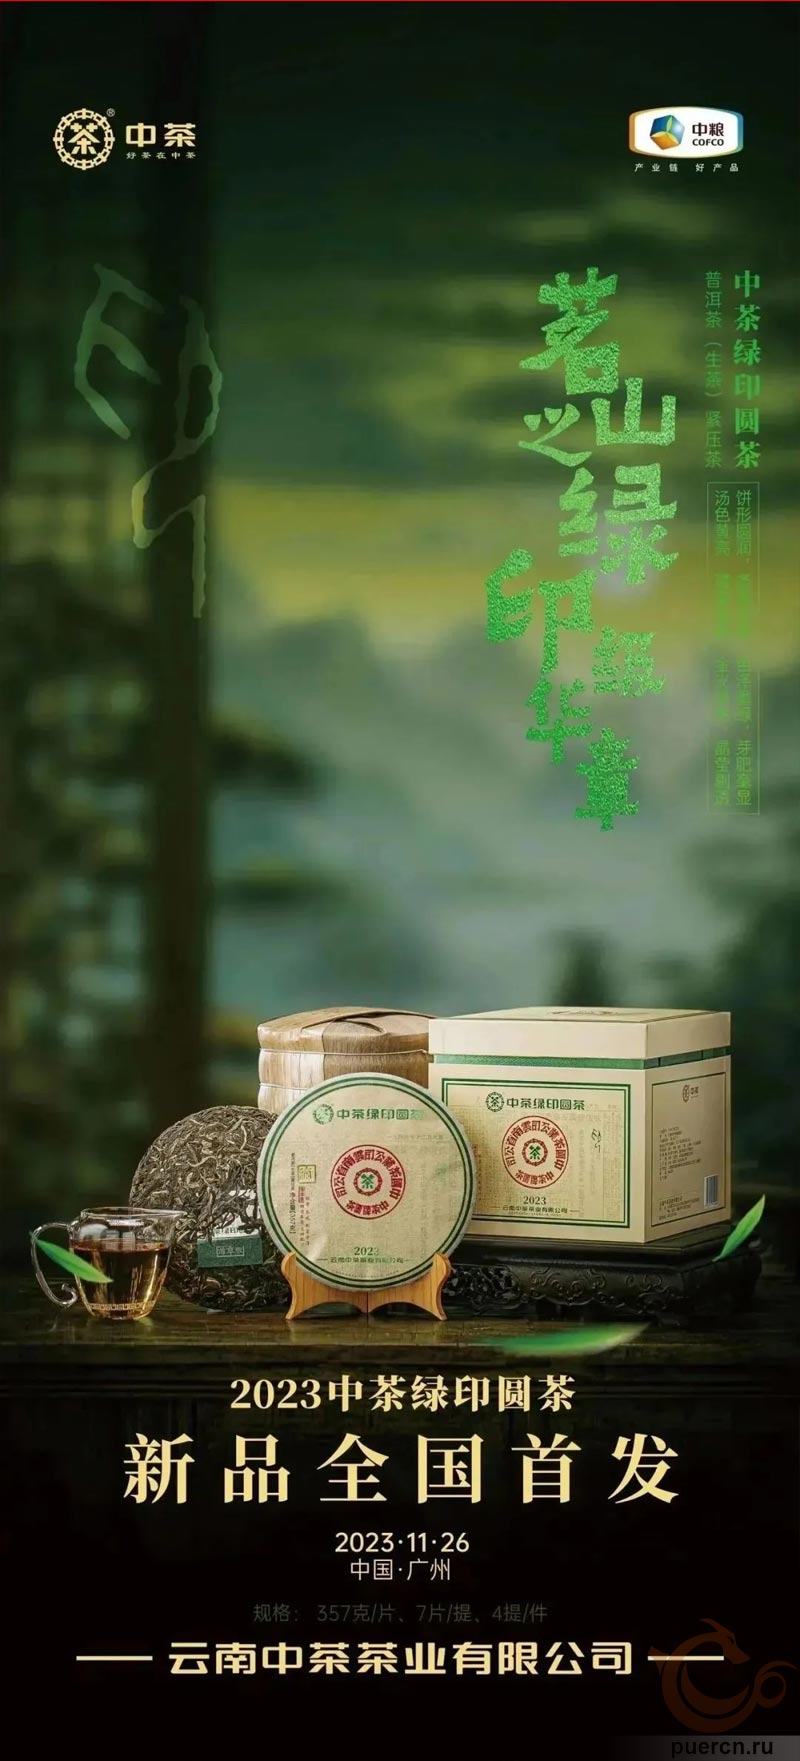 Рекламный постер нового чая